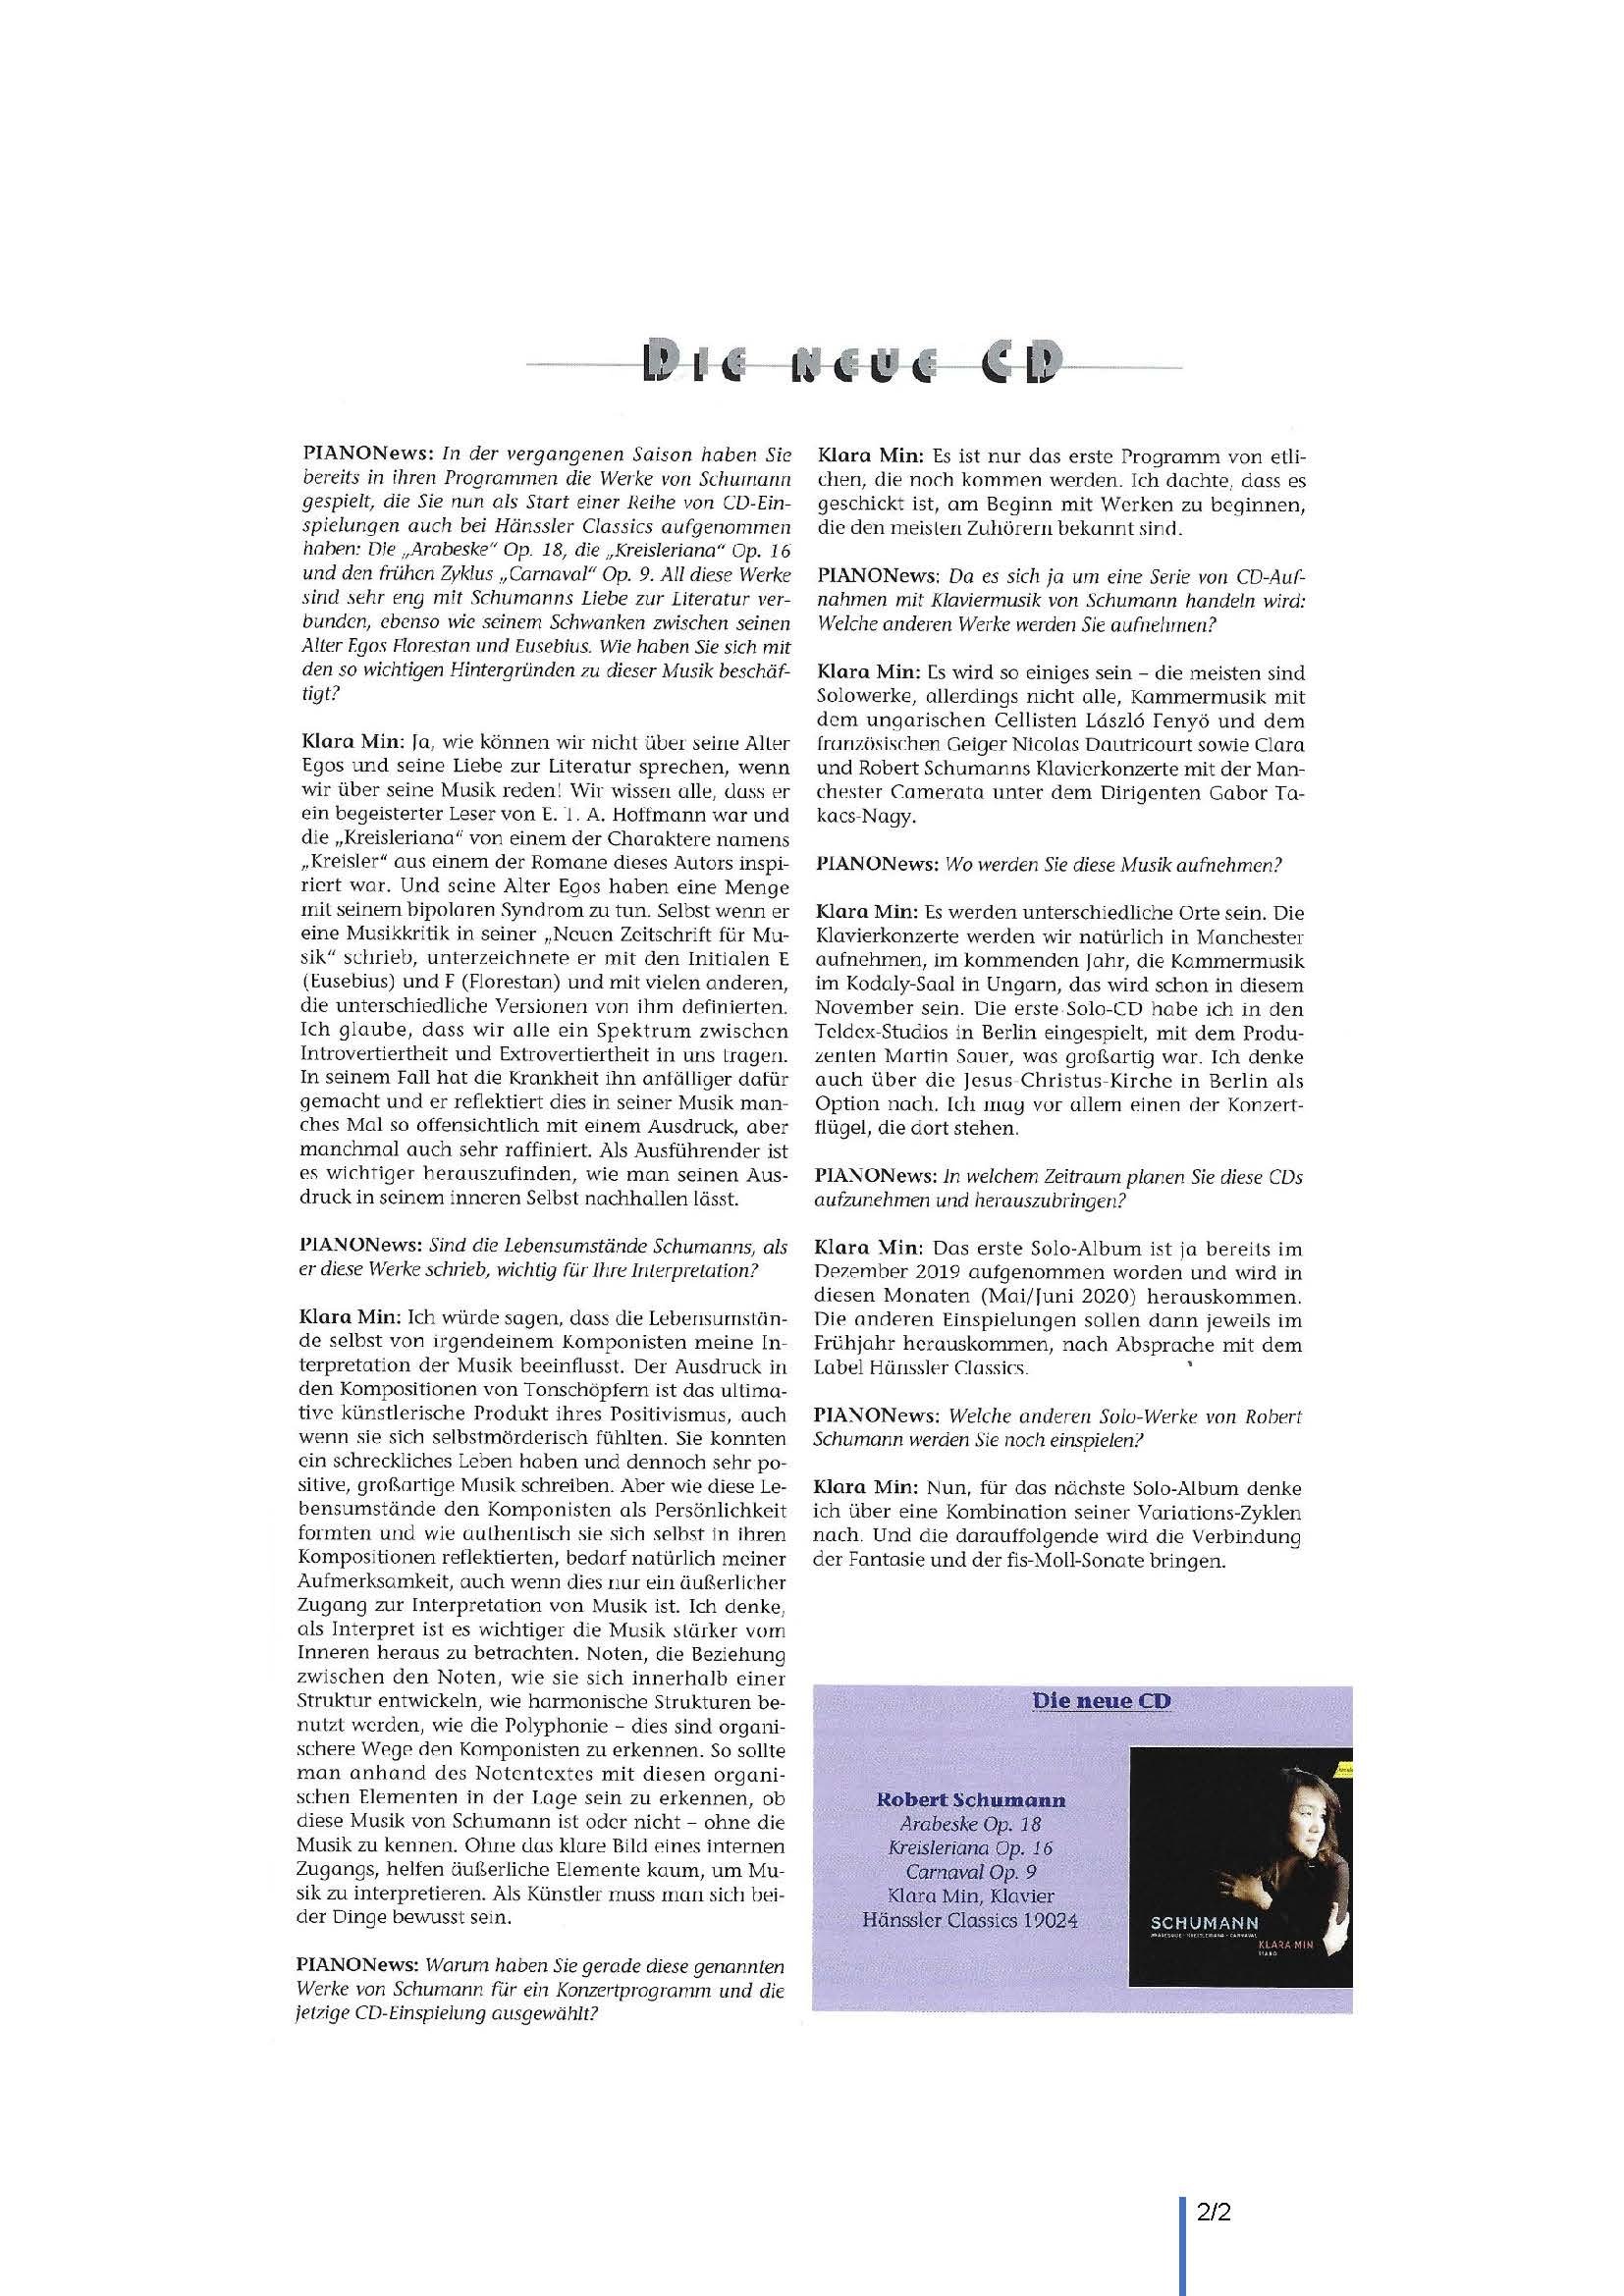 PianoNews_Interview_Schumann_Page_2.jpg